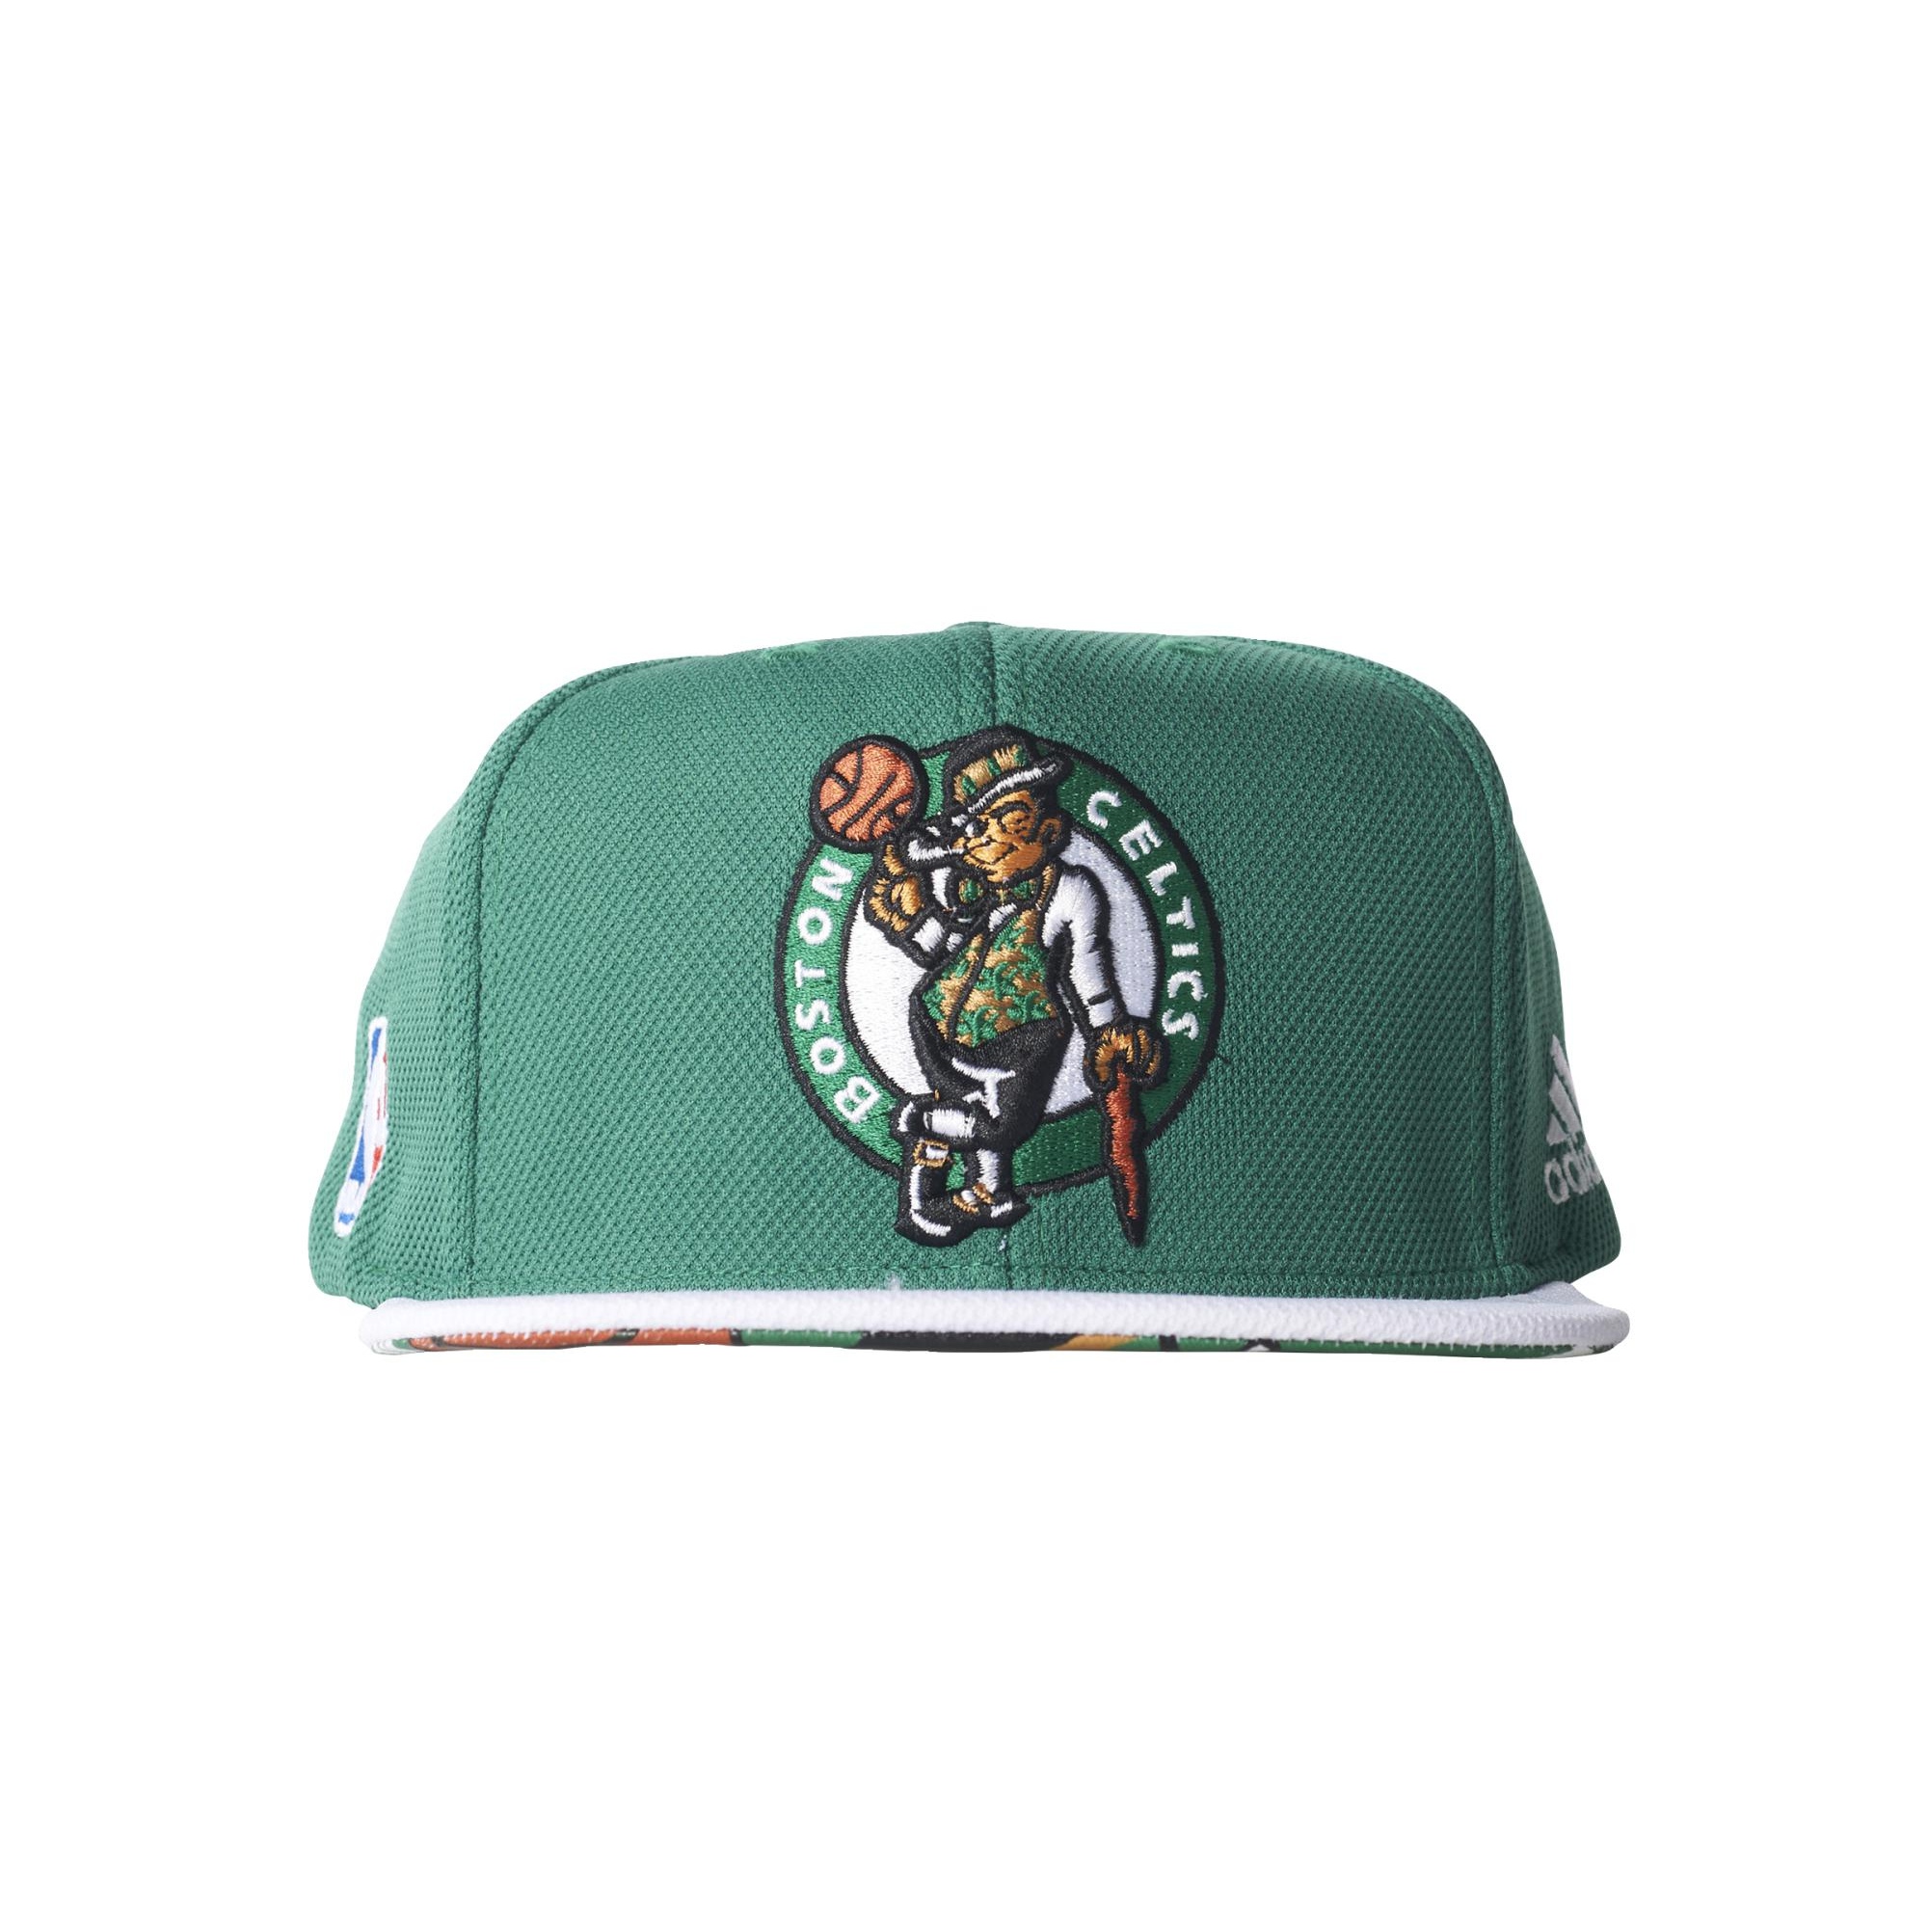 gobierno detalles conversión Adidas NBA Gorra Flat Cap Celtics (verde/blanco/negro)